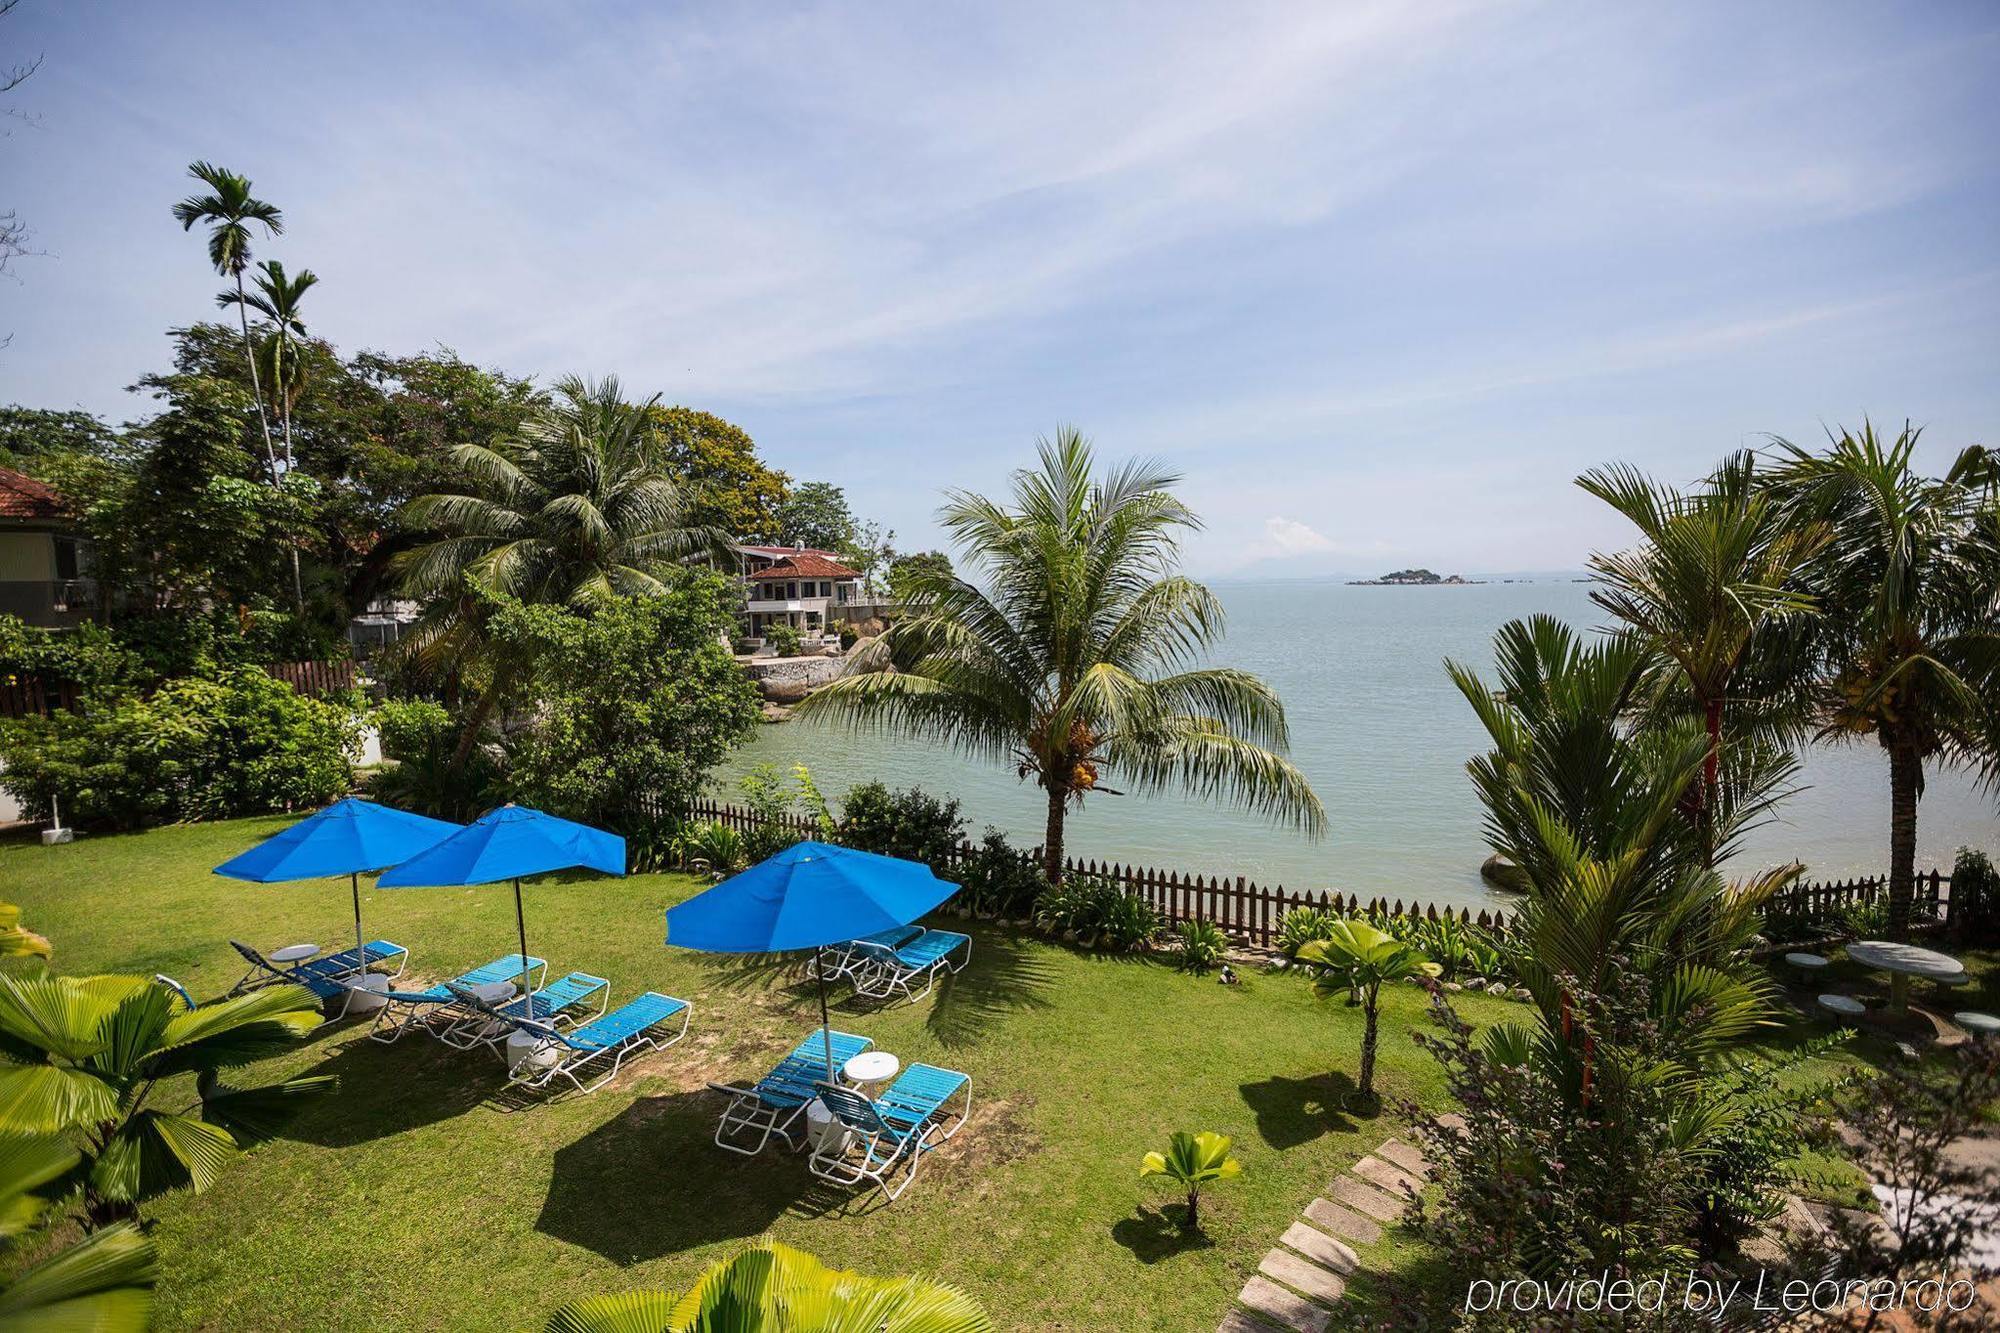 Copthorne Orchid Hotel Penang Tanjung Bungah  Buitenkant foto